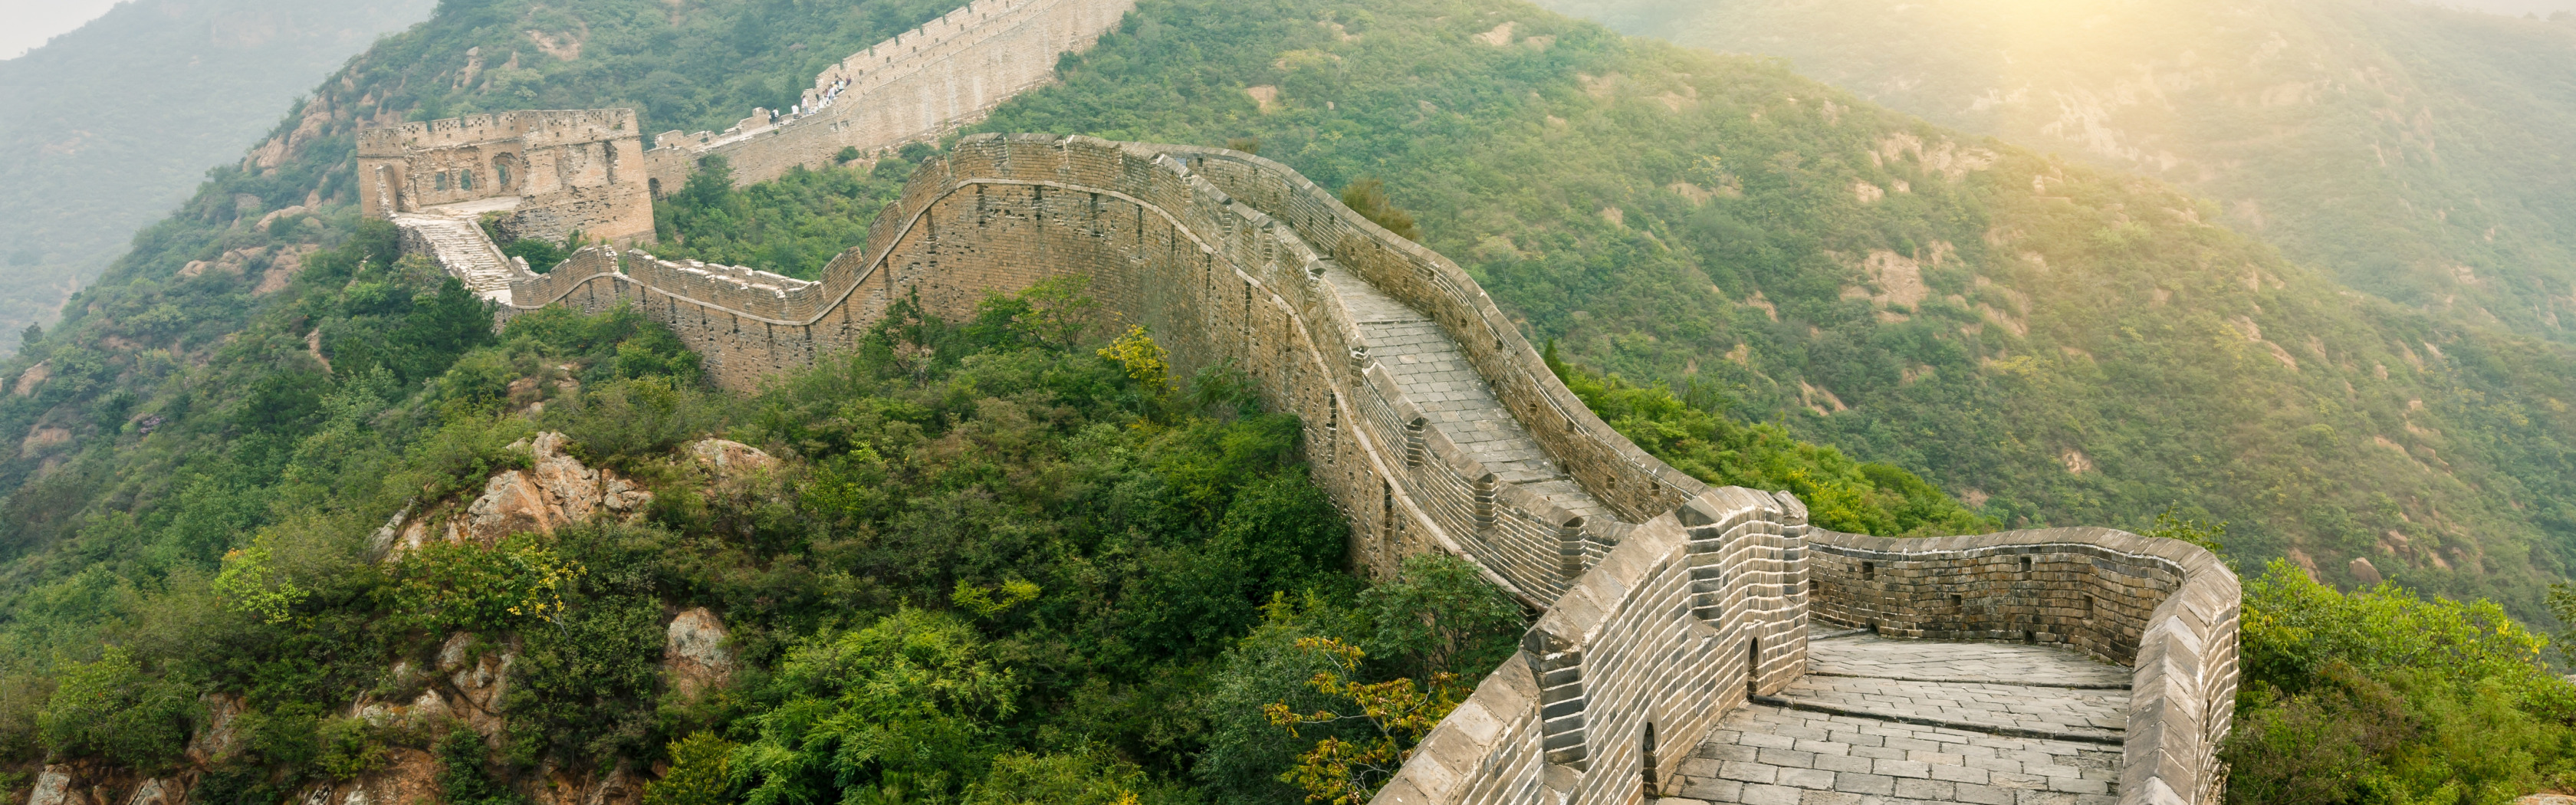 Великая китайская стена пекин как добраться. Великая китайская стена. Китайская стена чудо света. Мутяньюй Великая китайская стена. Музей Великой китайской стены.